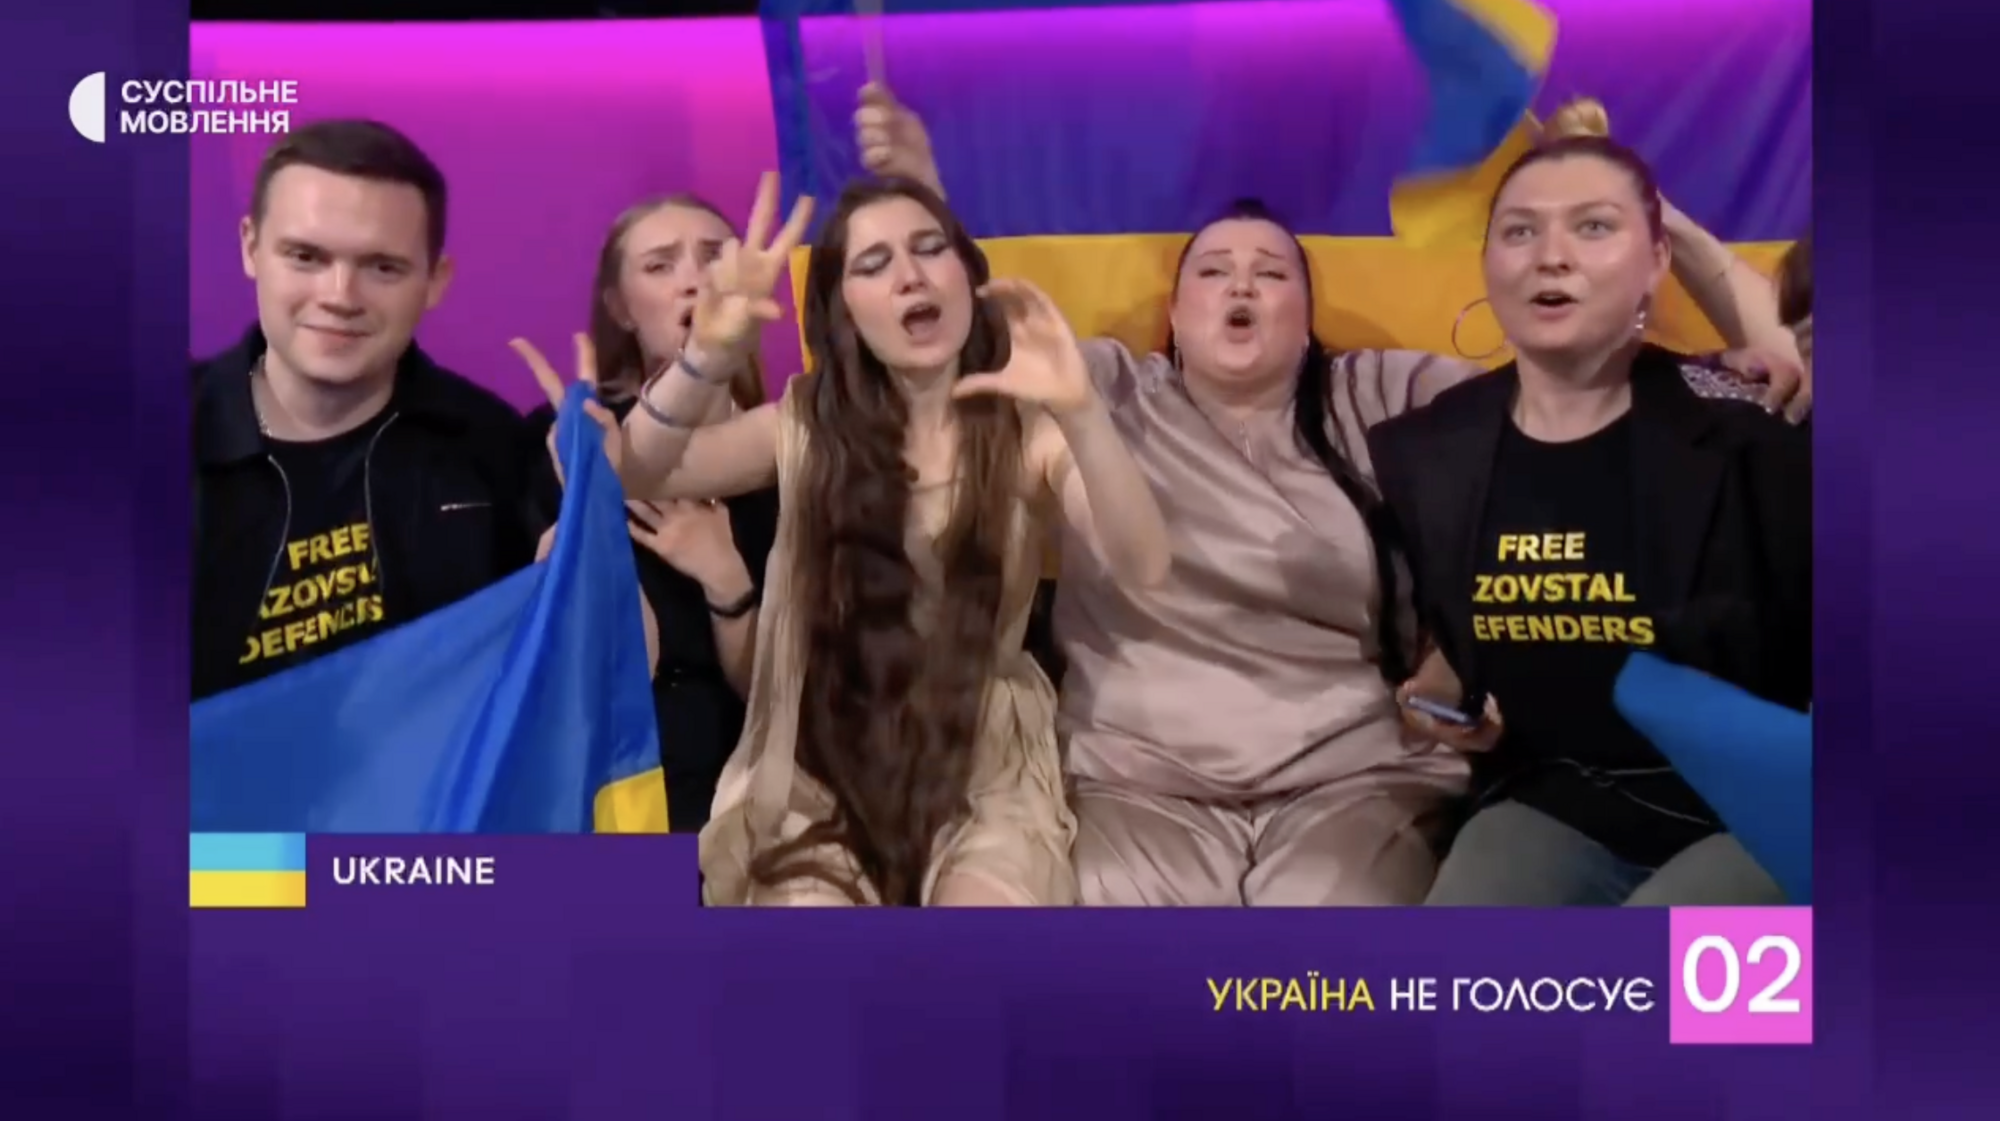 "Номера смерти" не существует! Как Украина сломала главный стереотип Евровидения и стала самой преданной болельщицей Швейцарии